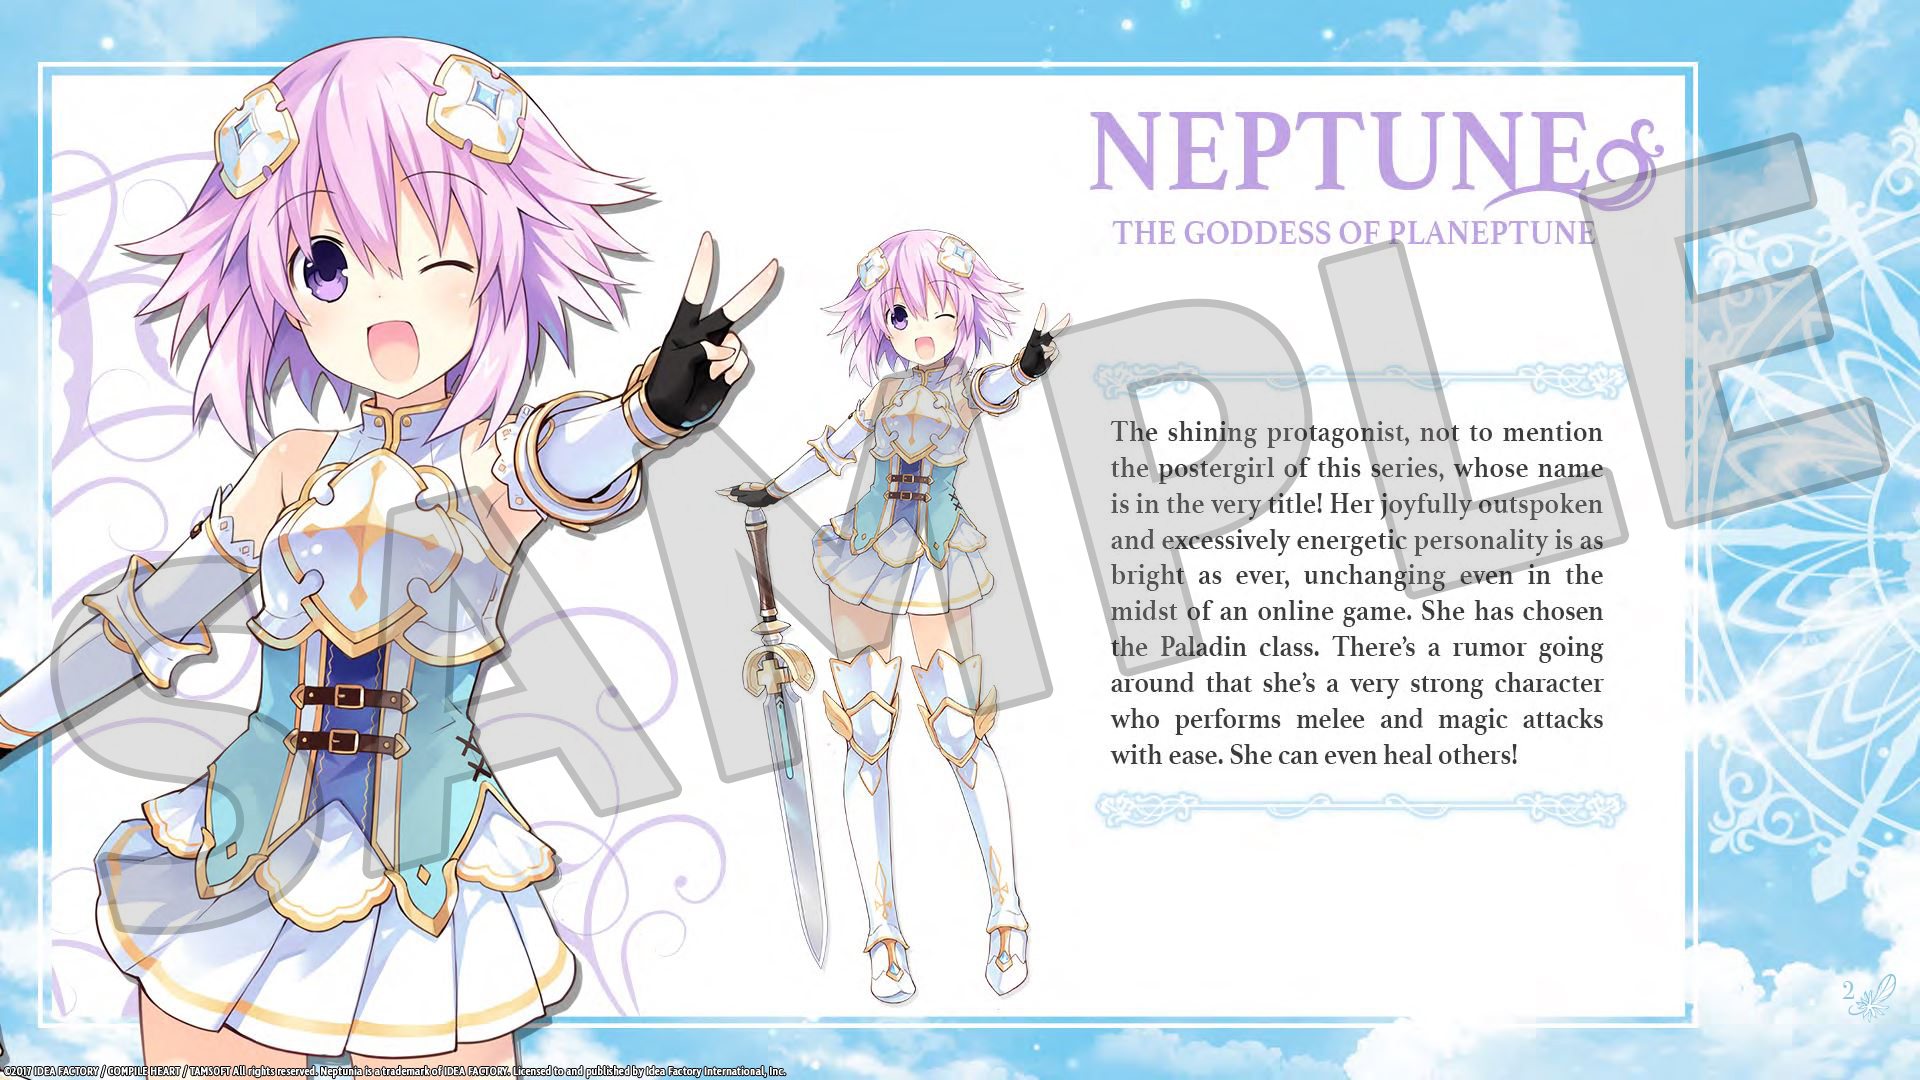 Cyberdimension Neptunia: 4 Goddesses Online - Deluxe Pack DLC Steam CD Key 1.69 usd